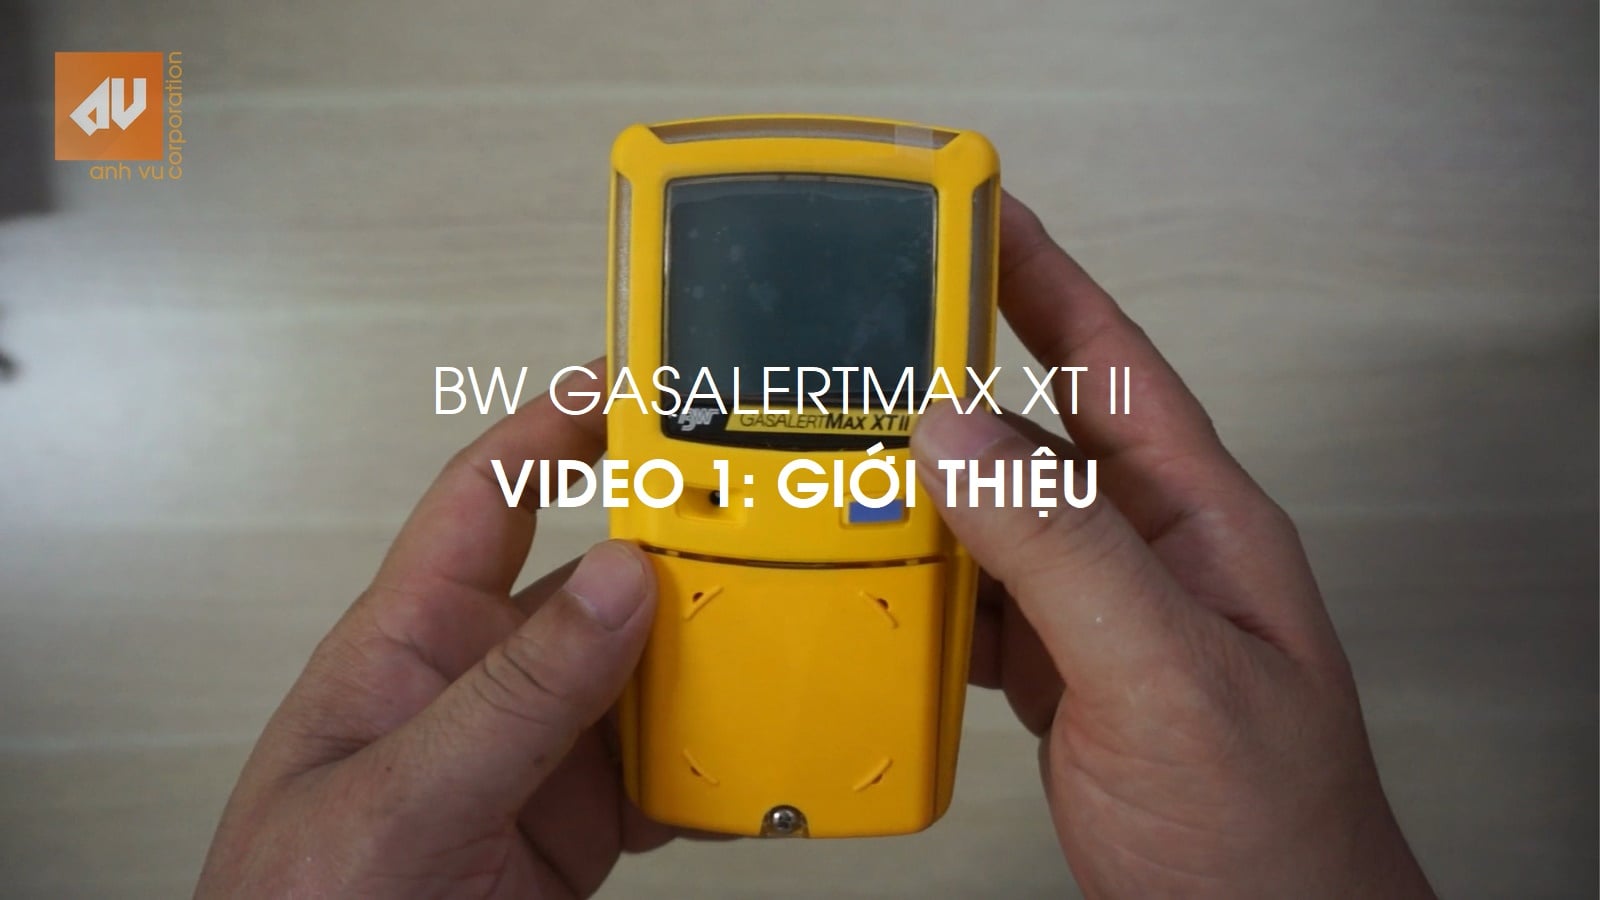 No.1 - Giới thiệu máy đo khí BW GasAlertMax XT II [EN: Introduce video]